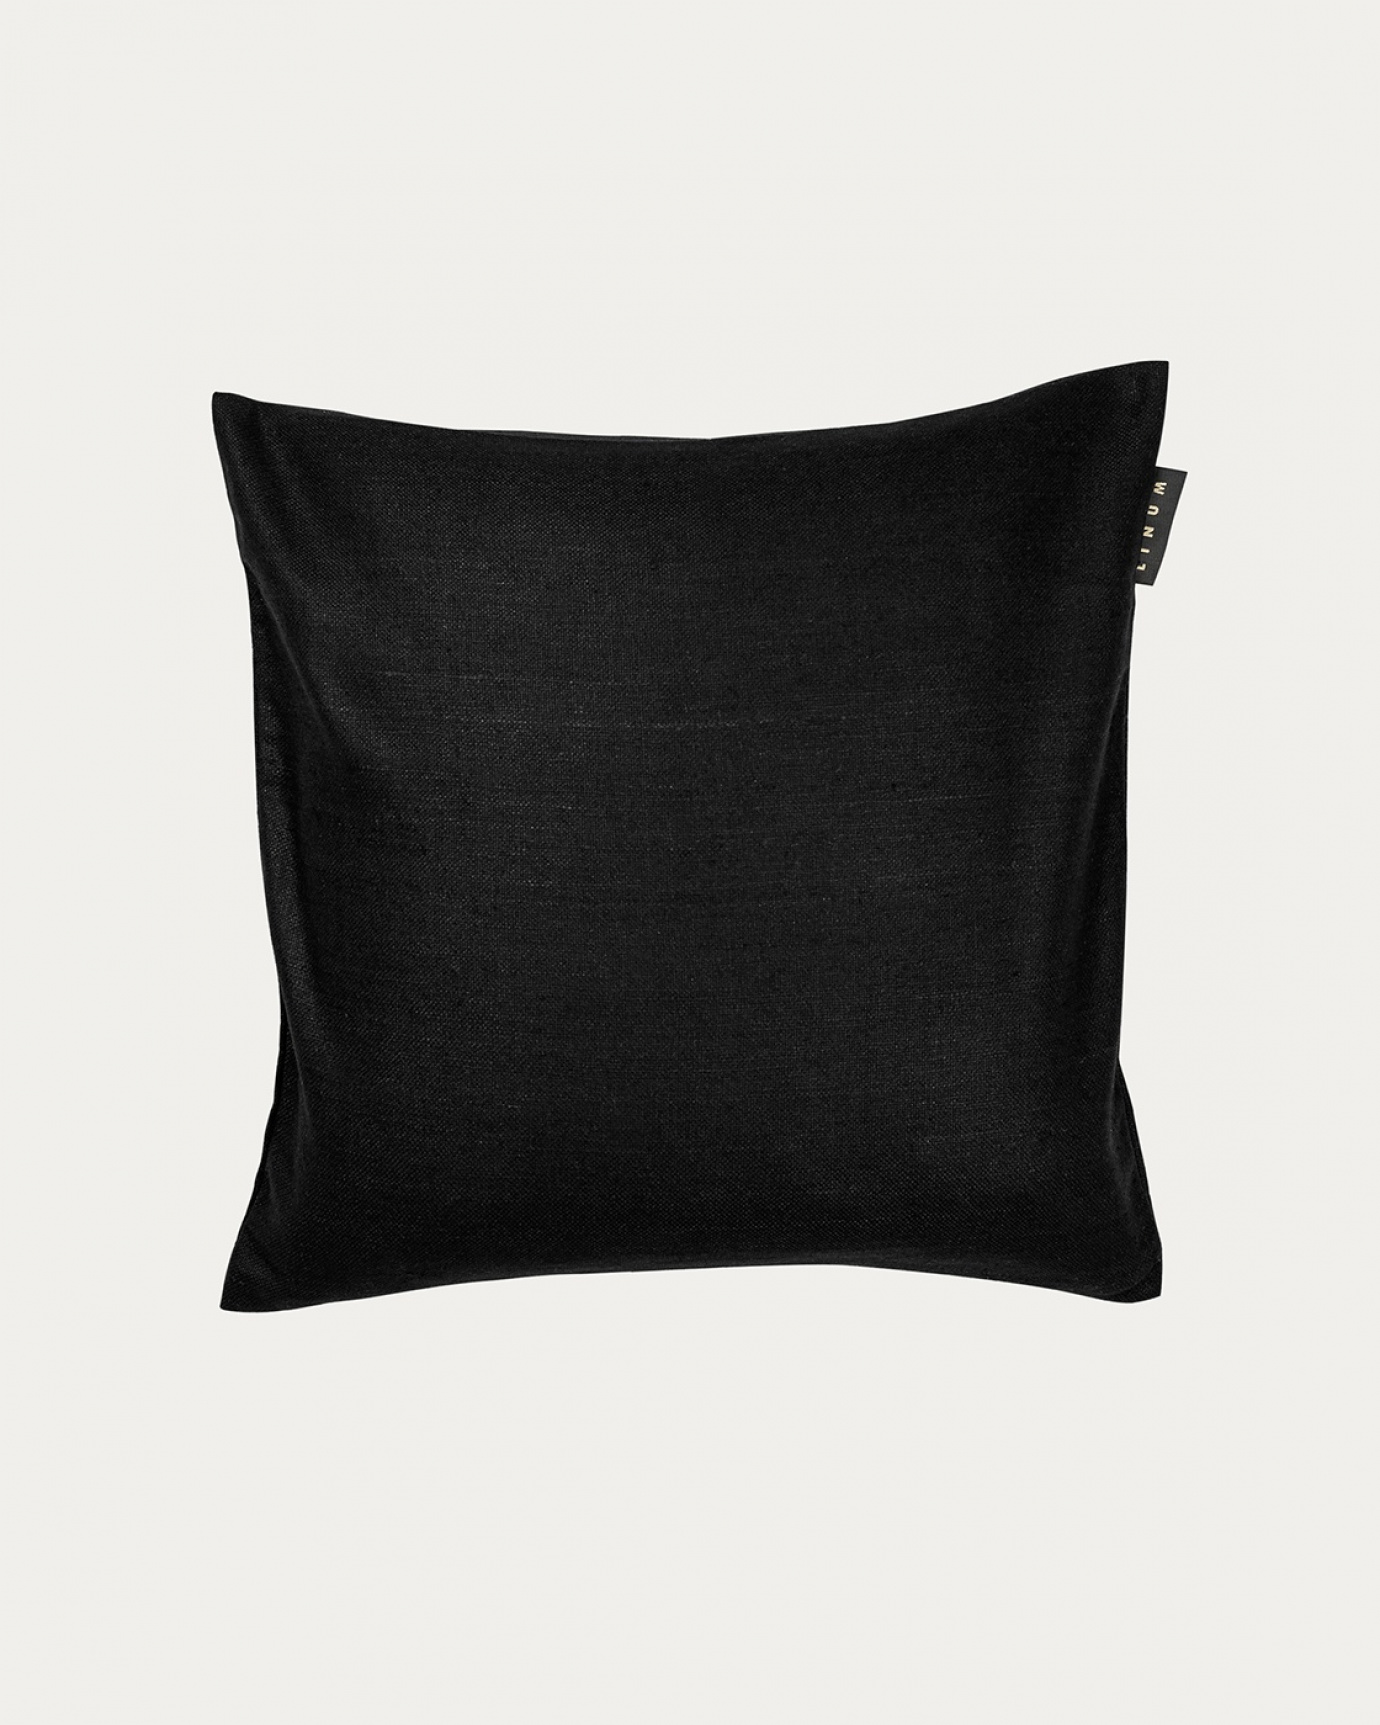 Immagine prodotto nero SETA copricuscini realizzata in 100% seta grezza che dona una bella lucentezza da LINUM DESIGN. Dimensioni 40x40 cm.